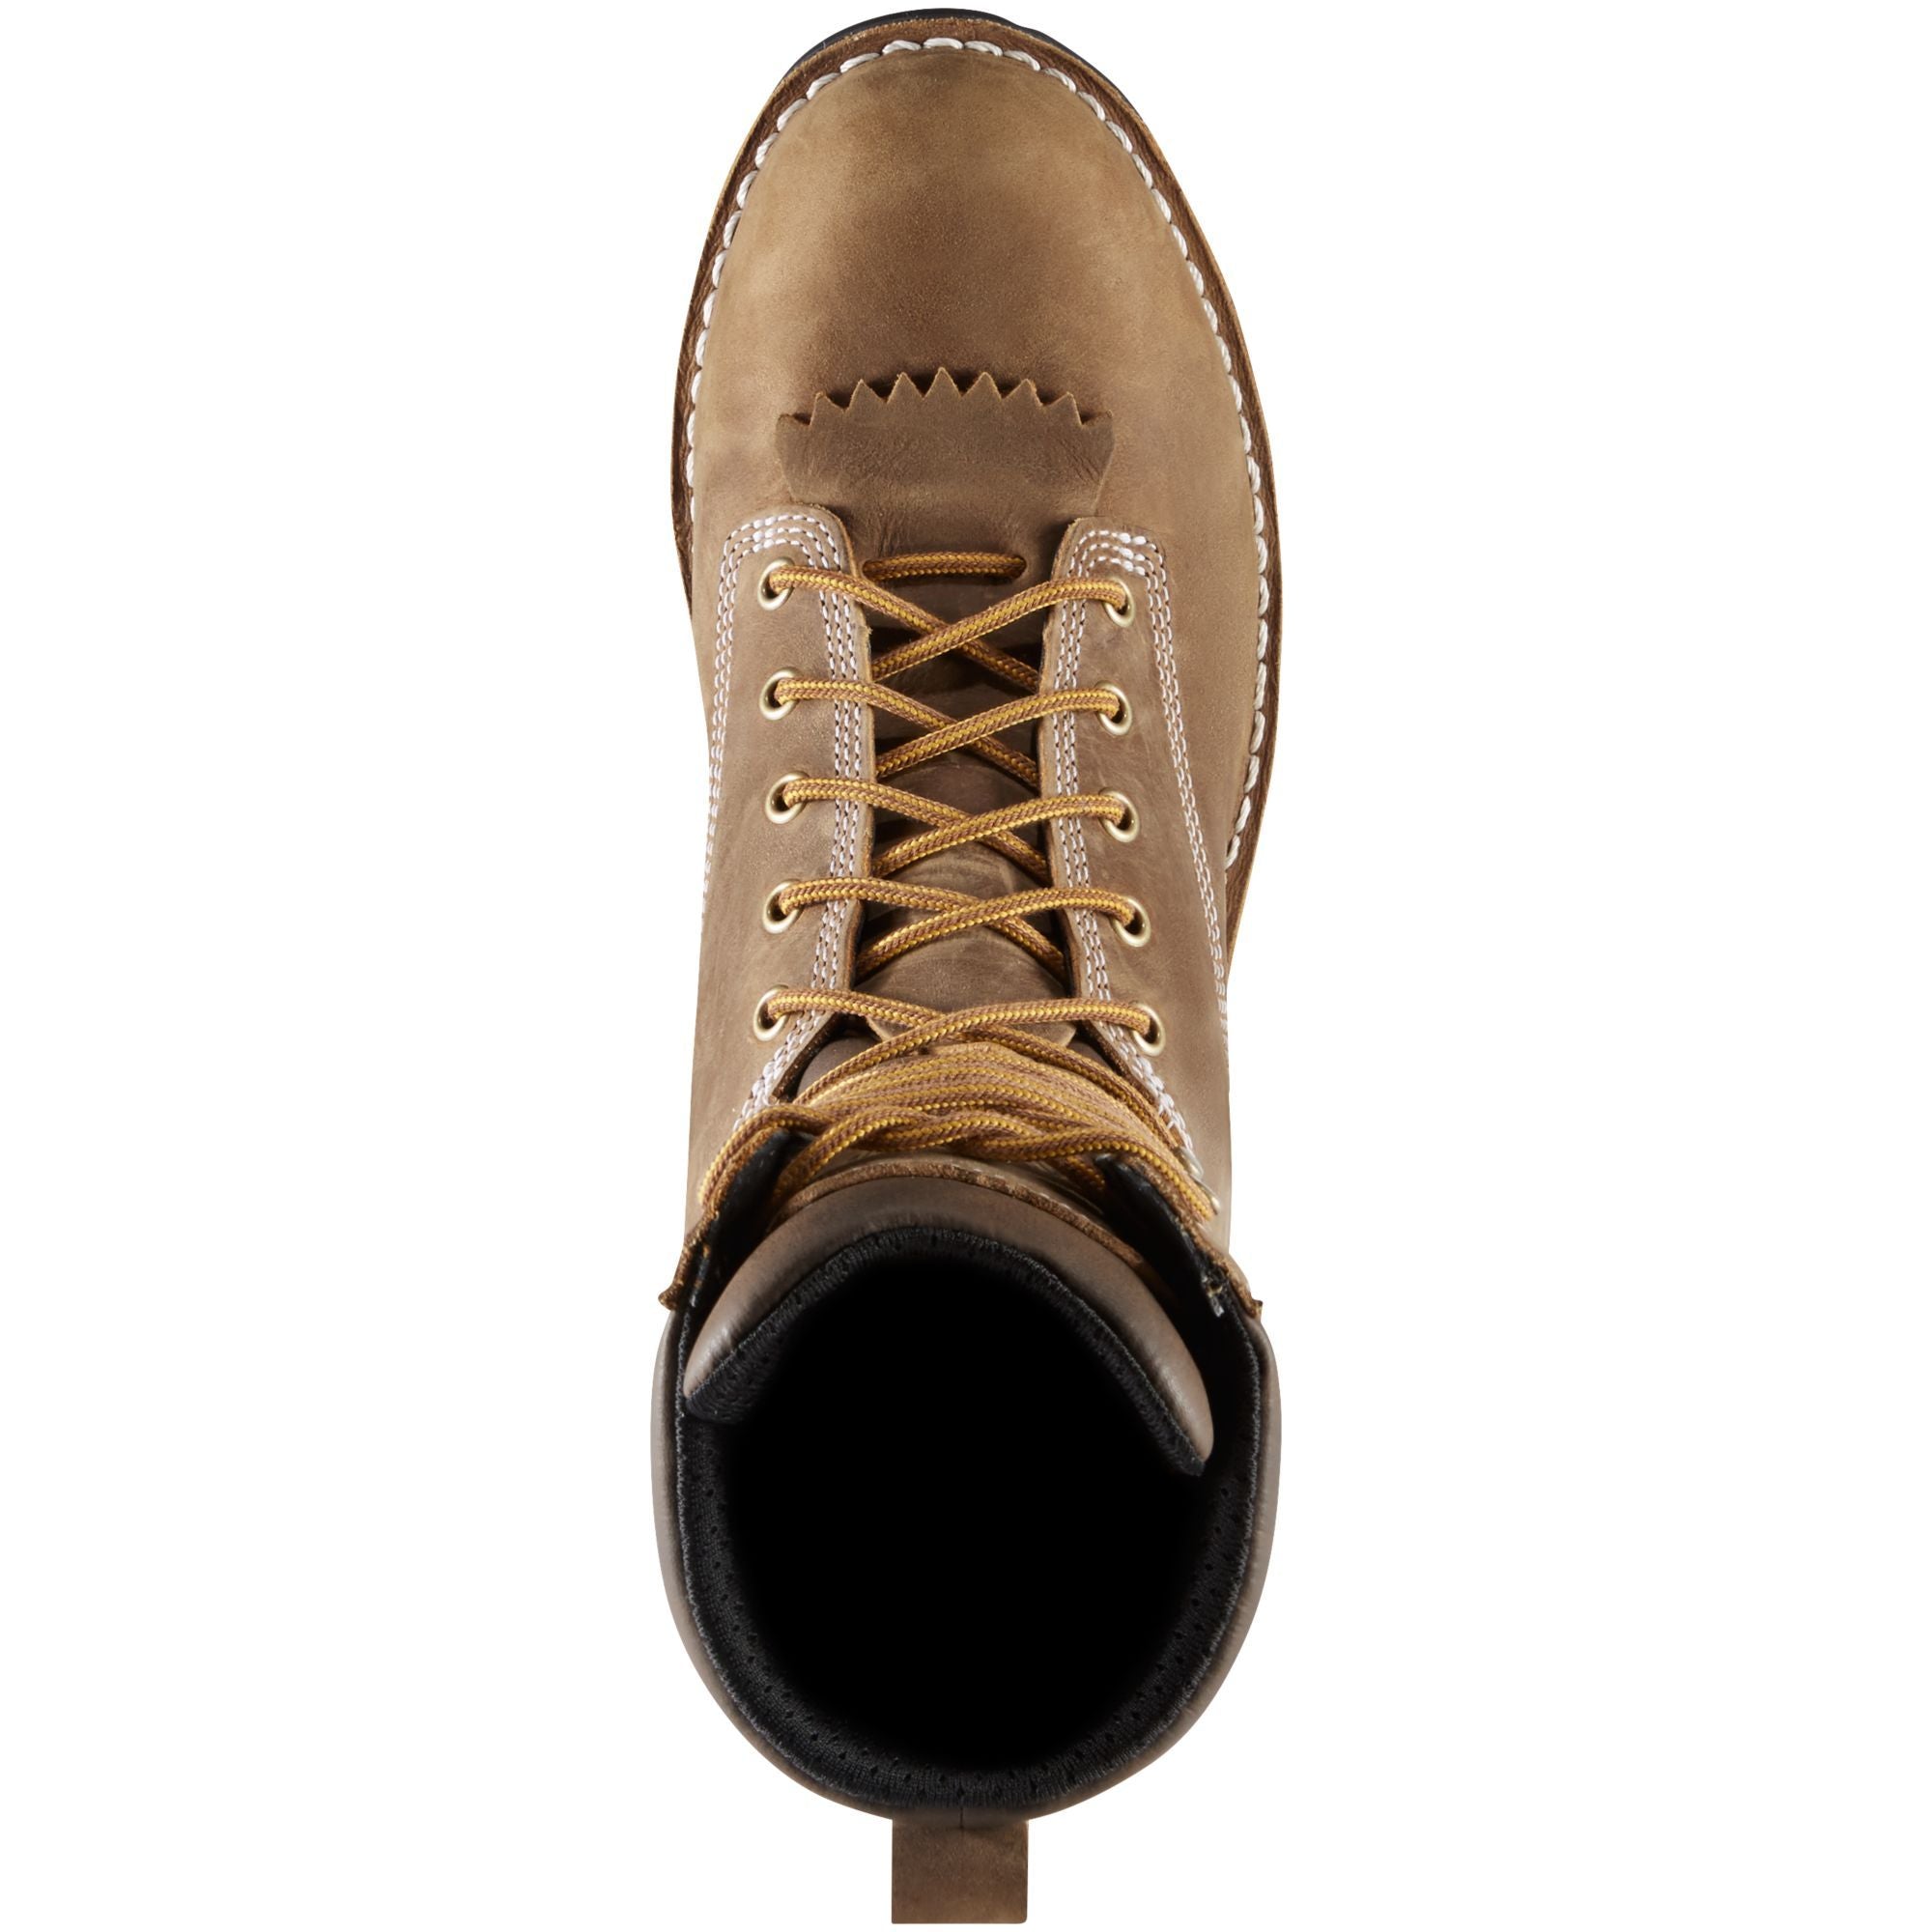 Danner Men's Logger Soft Toe WP Work Boot - Brown - 15439  - Overlook Boots